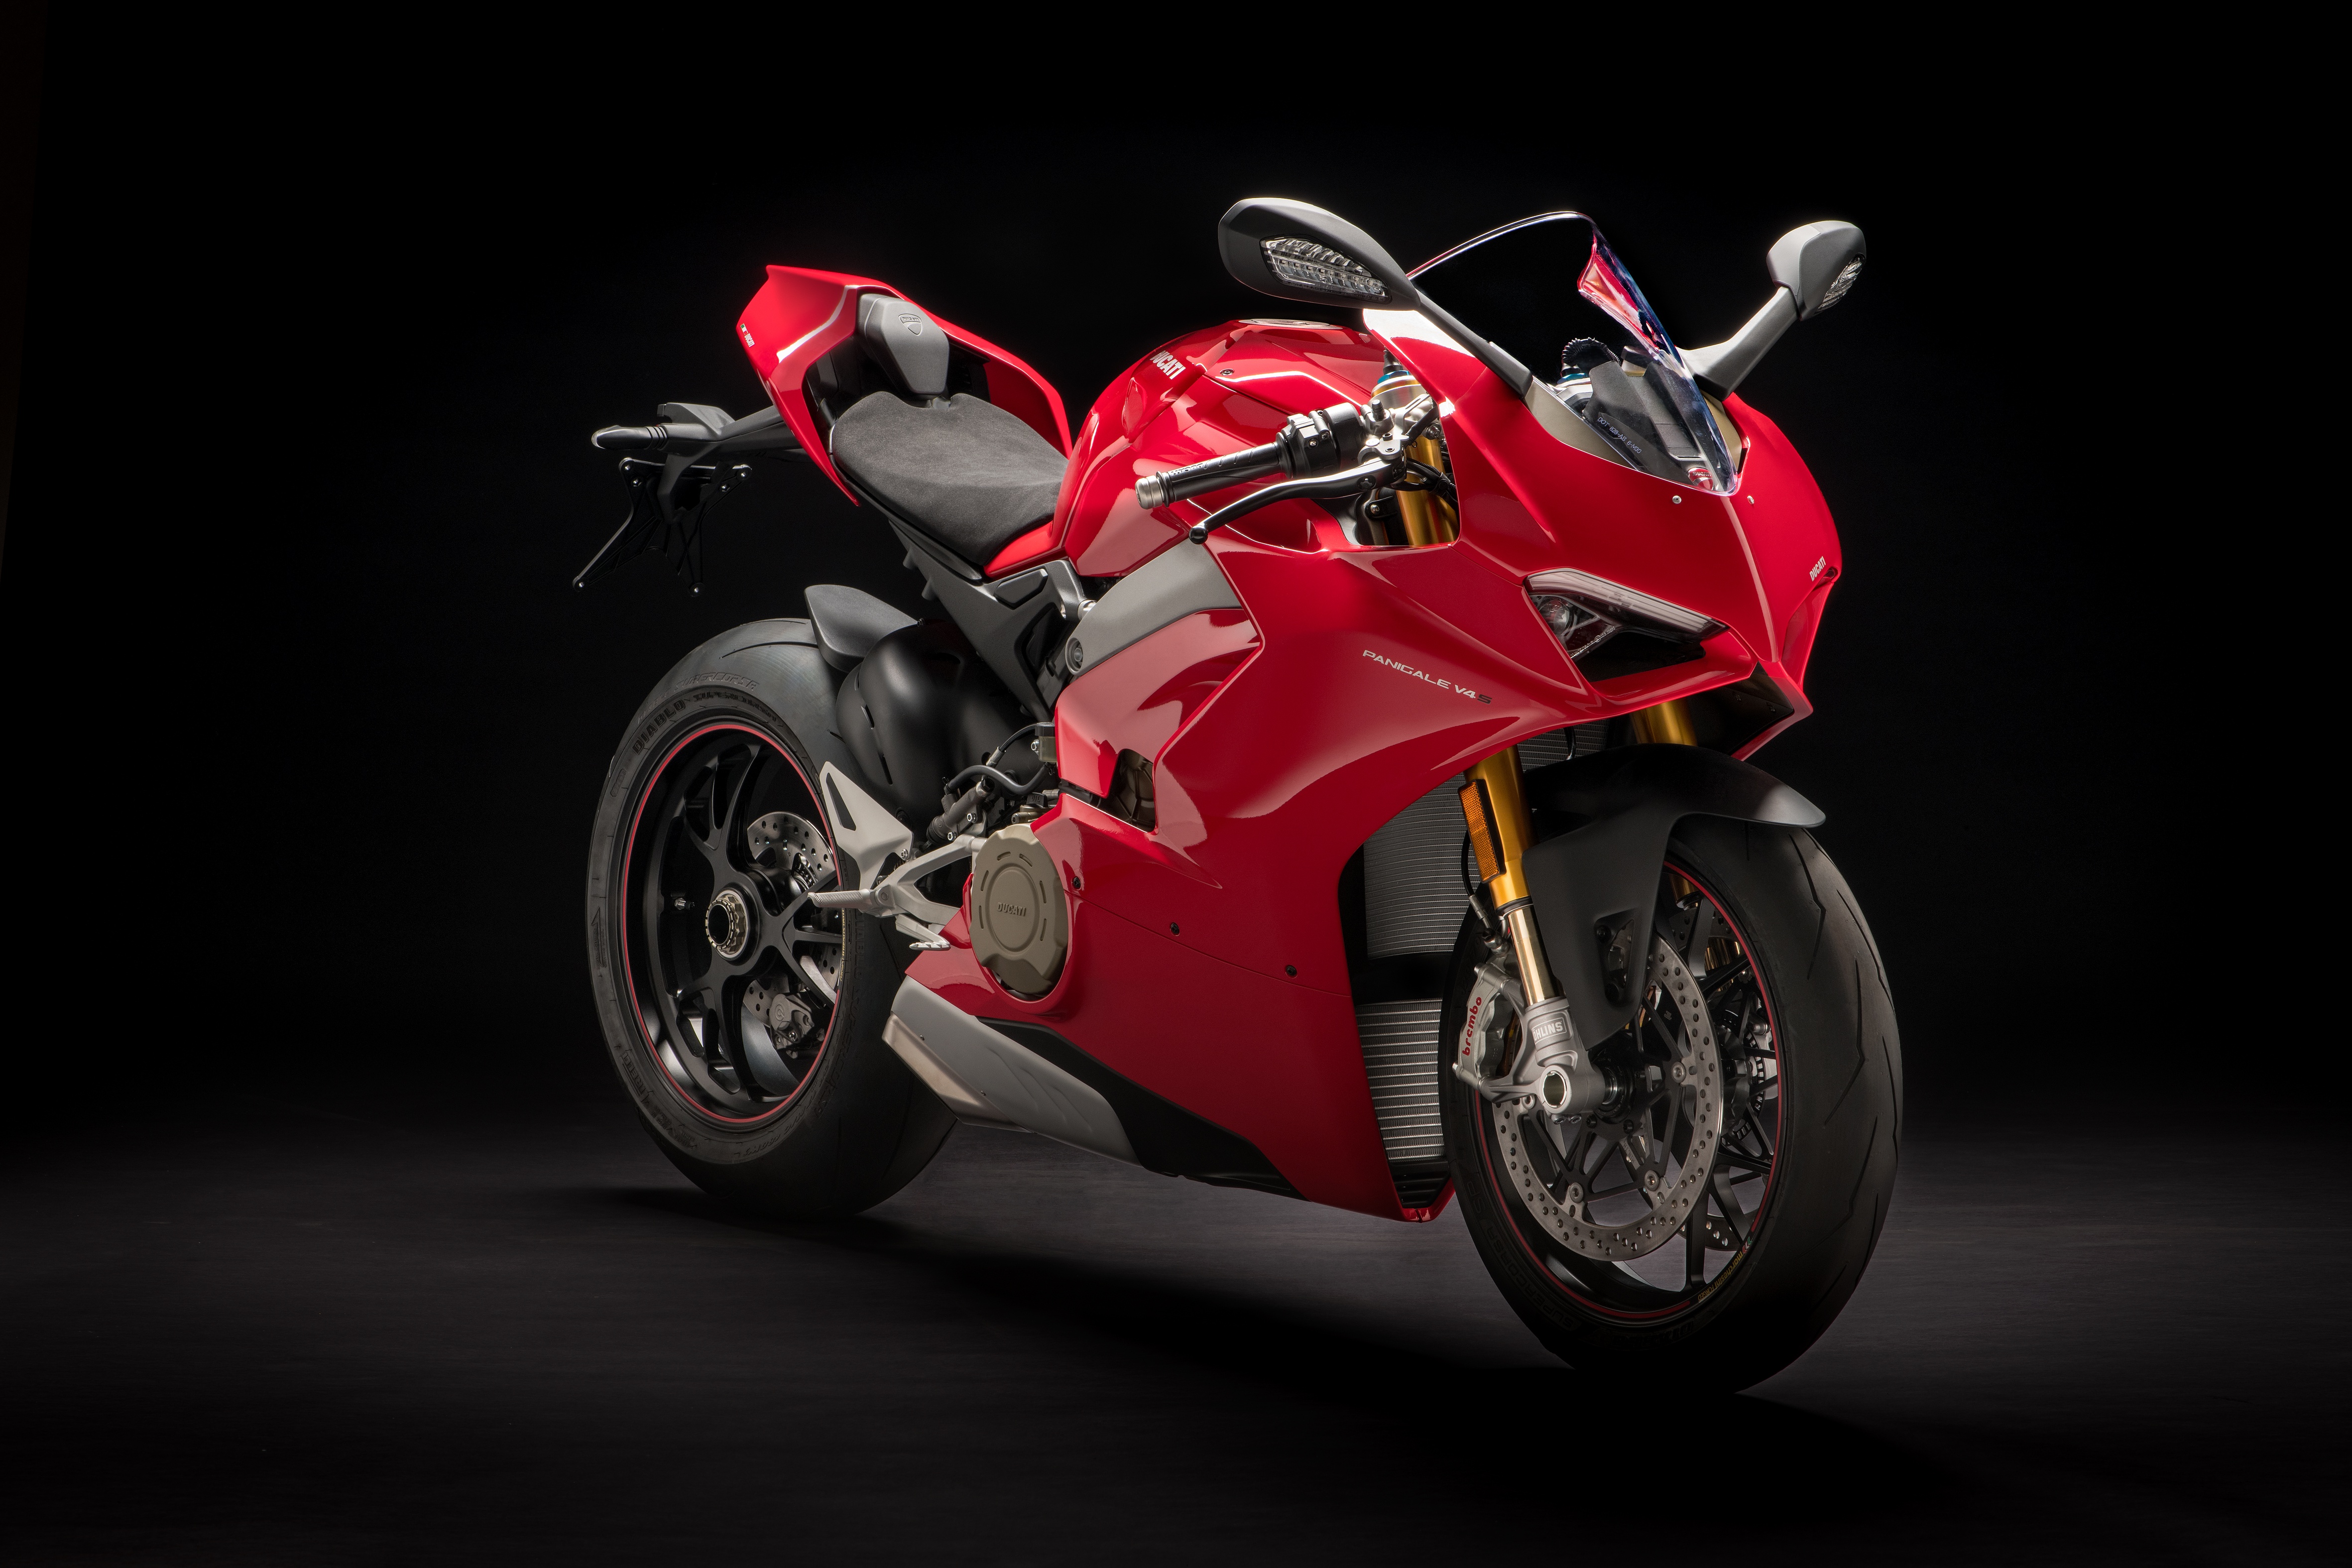 Télécharger des fonds d'écran Ducati Panigale V4 HD